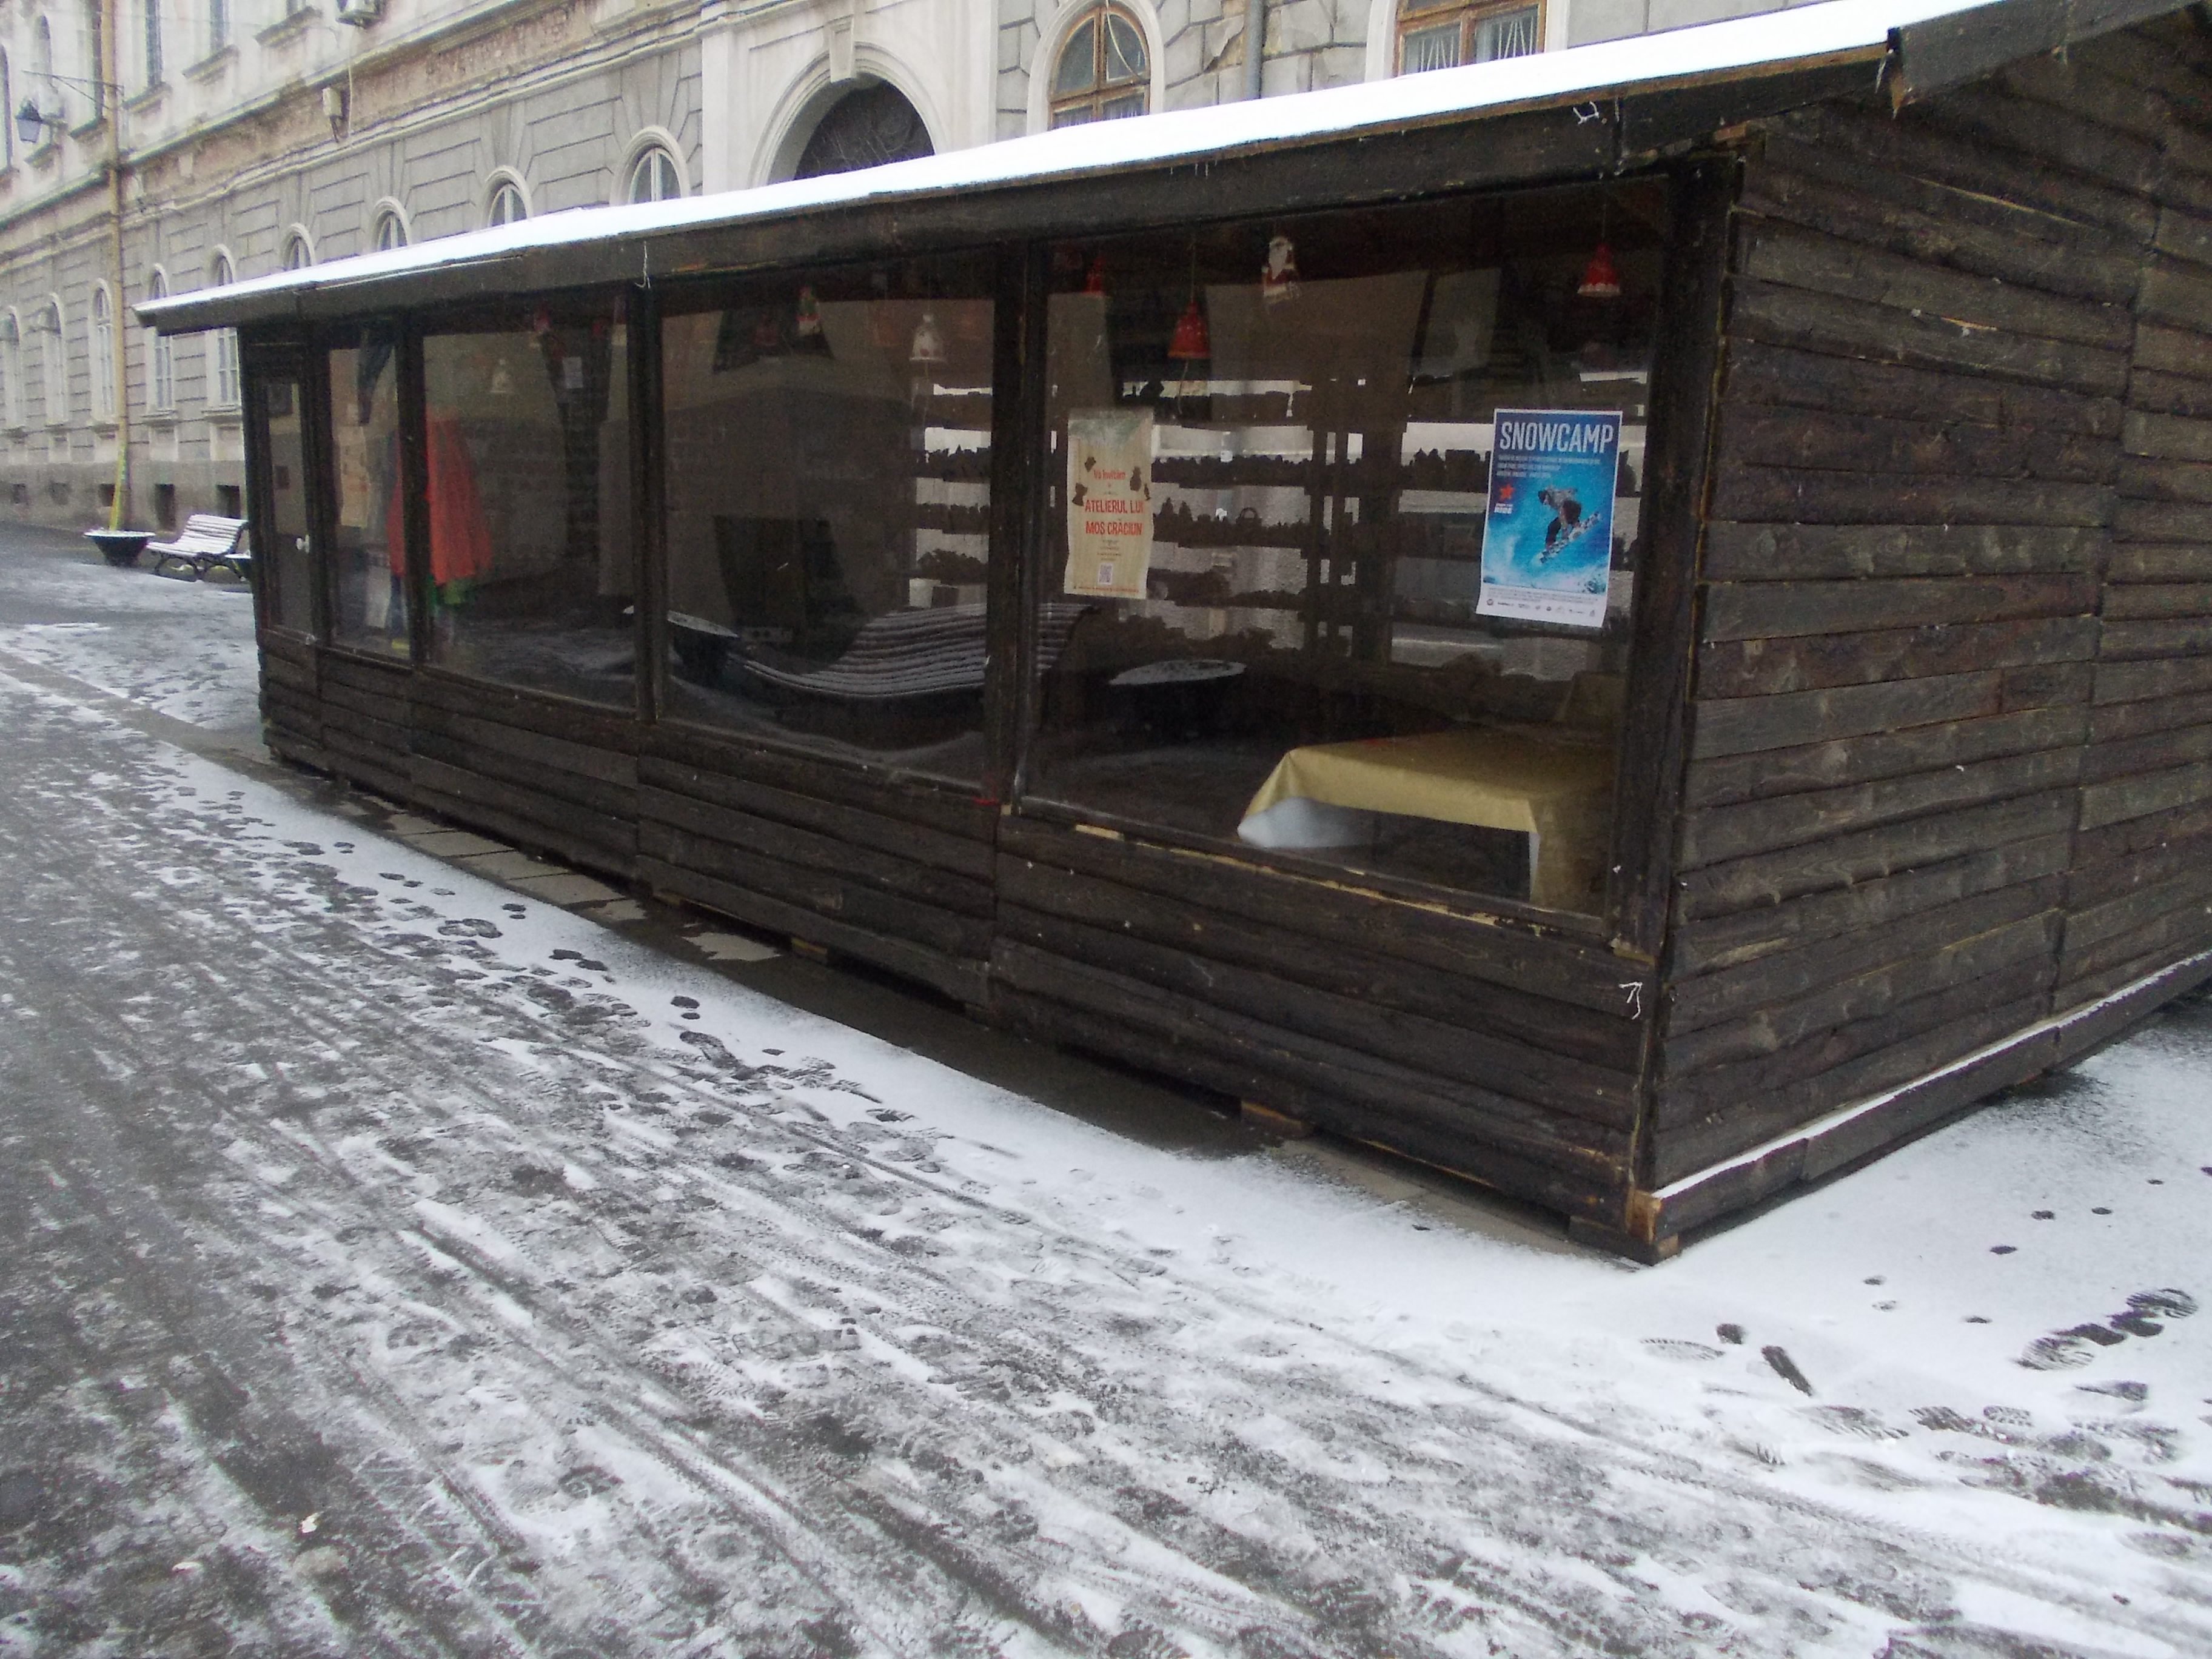 Mos Craciun s-a intors in Laponia, dar si-a uitat atelierul in centrul Timisoarei